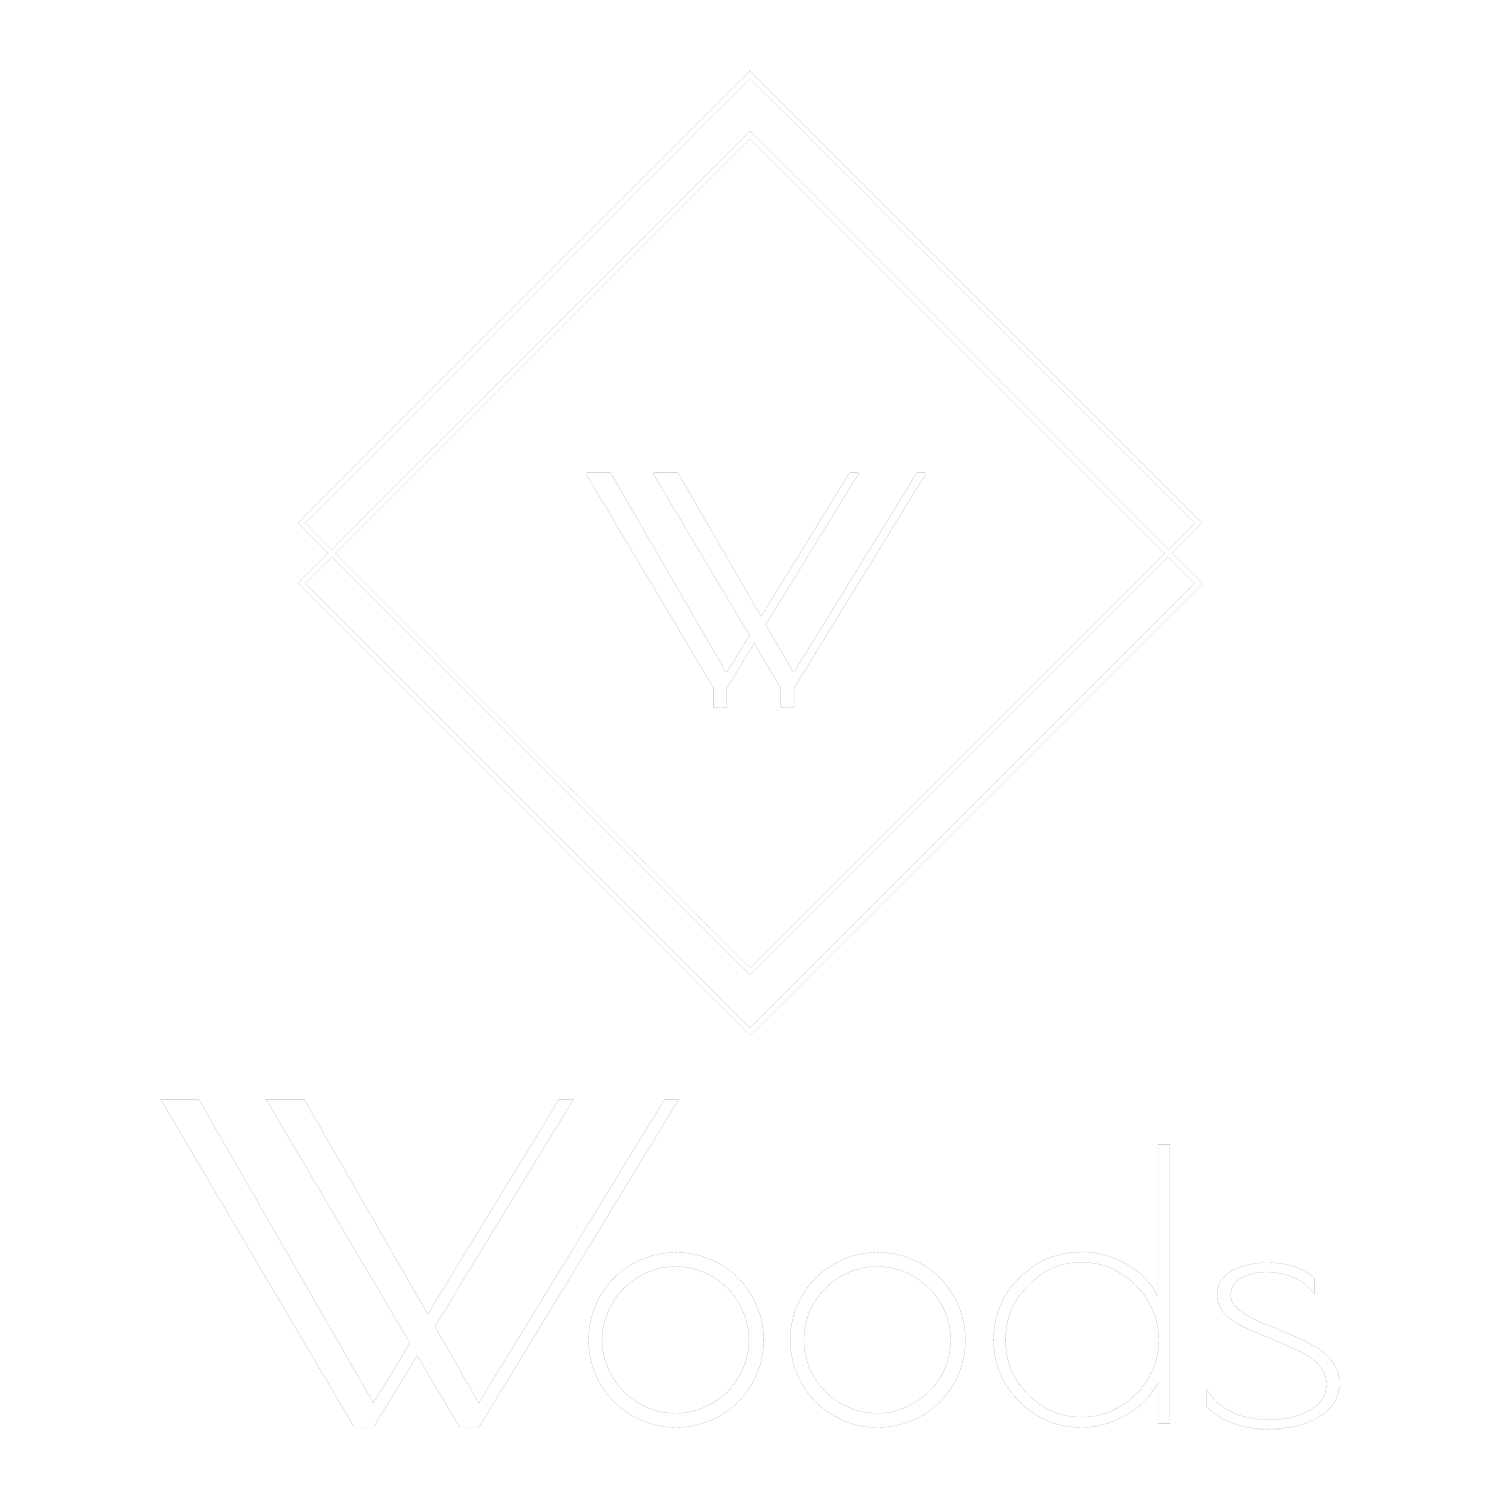 (c) Woods-cologne.de